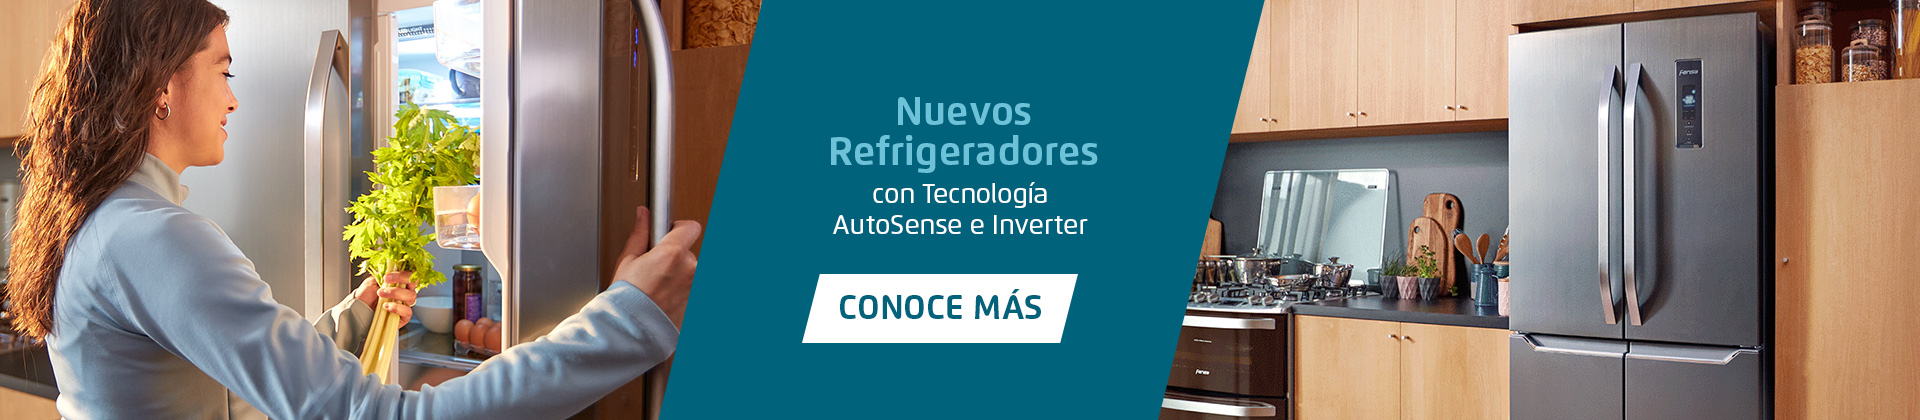 Nuevos Refrigeradores con  tecnología AutoSense e Inverter | CONOCE MÁS